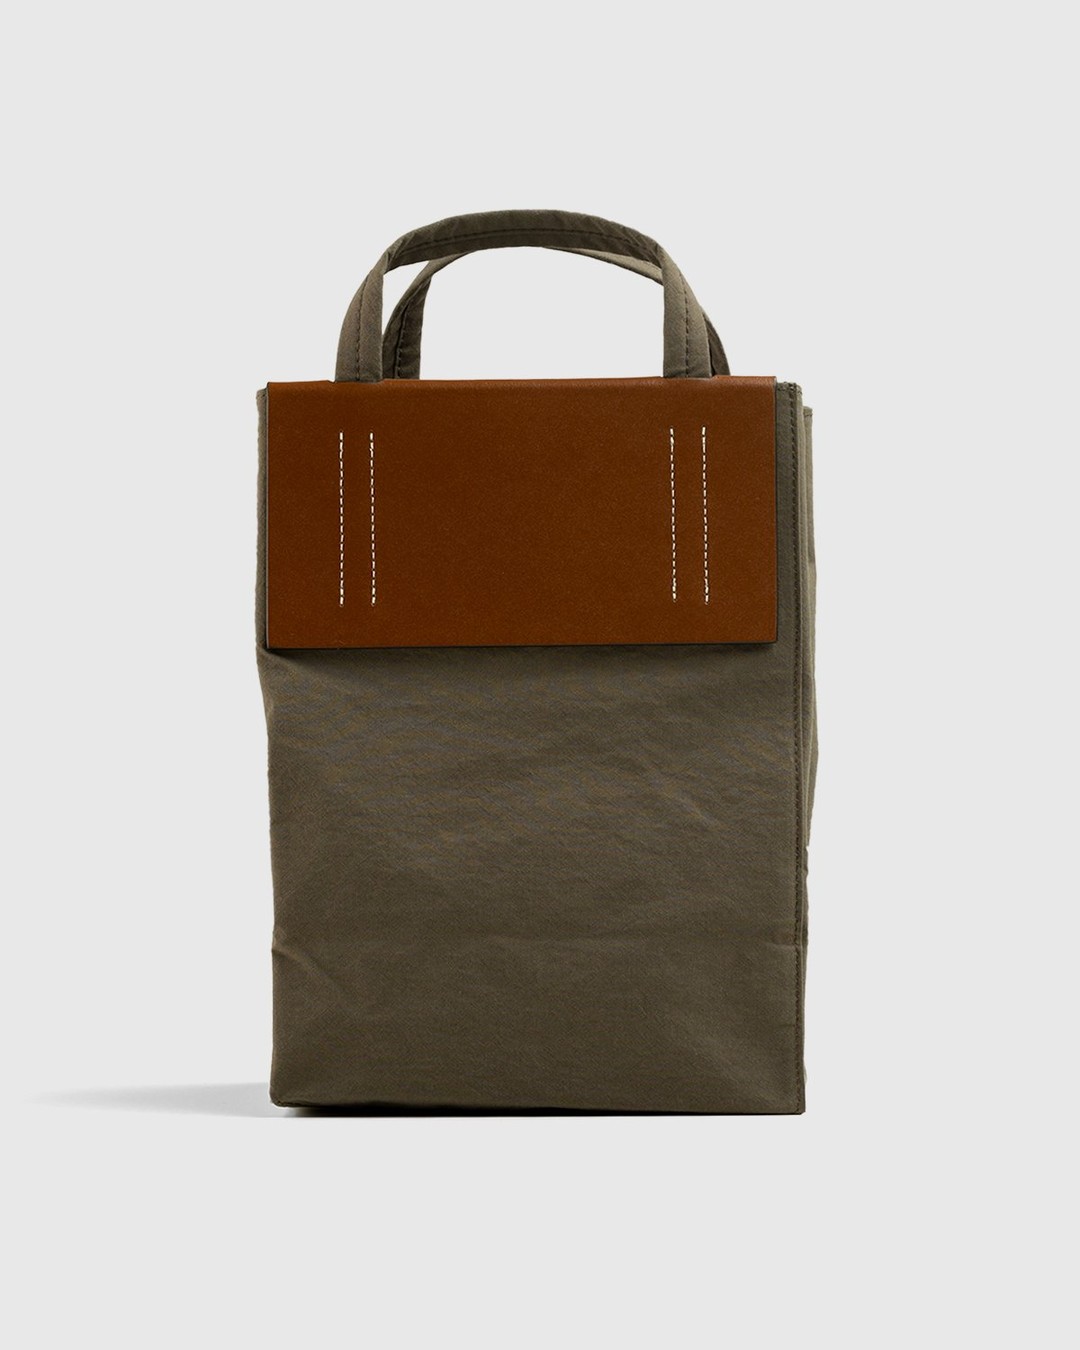 Acne Studios – Mini Tote Bag Brown - Tote Bags - Brown - Image 2